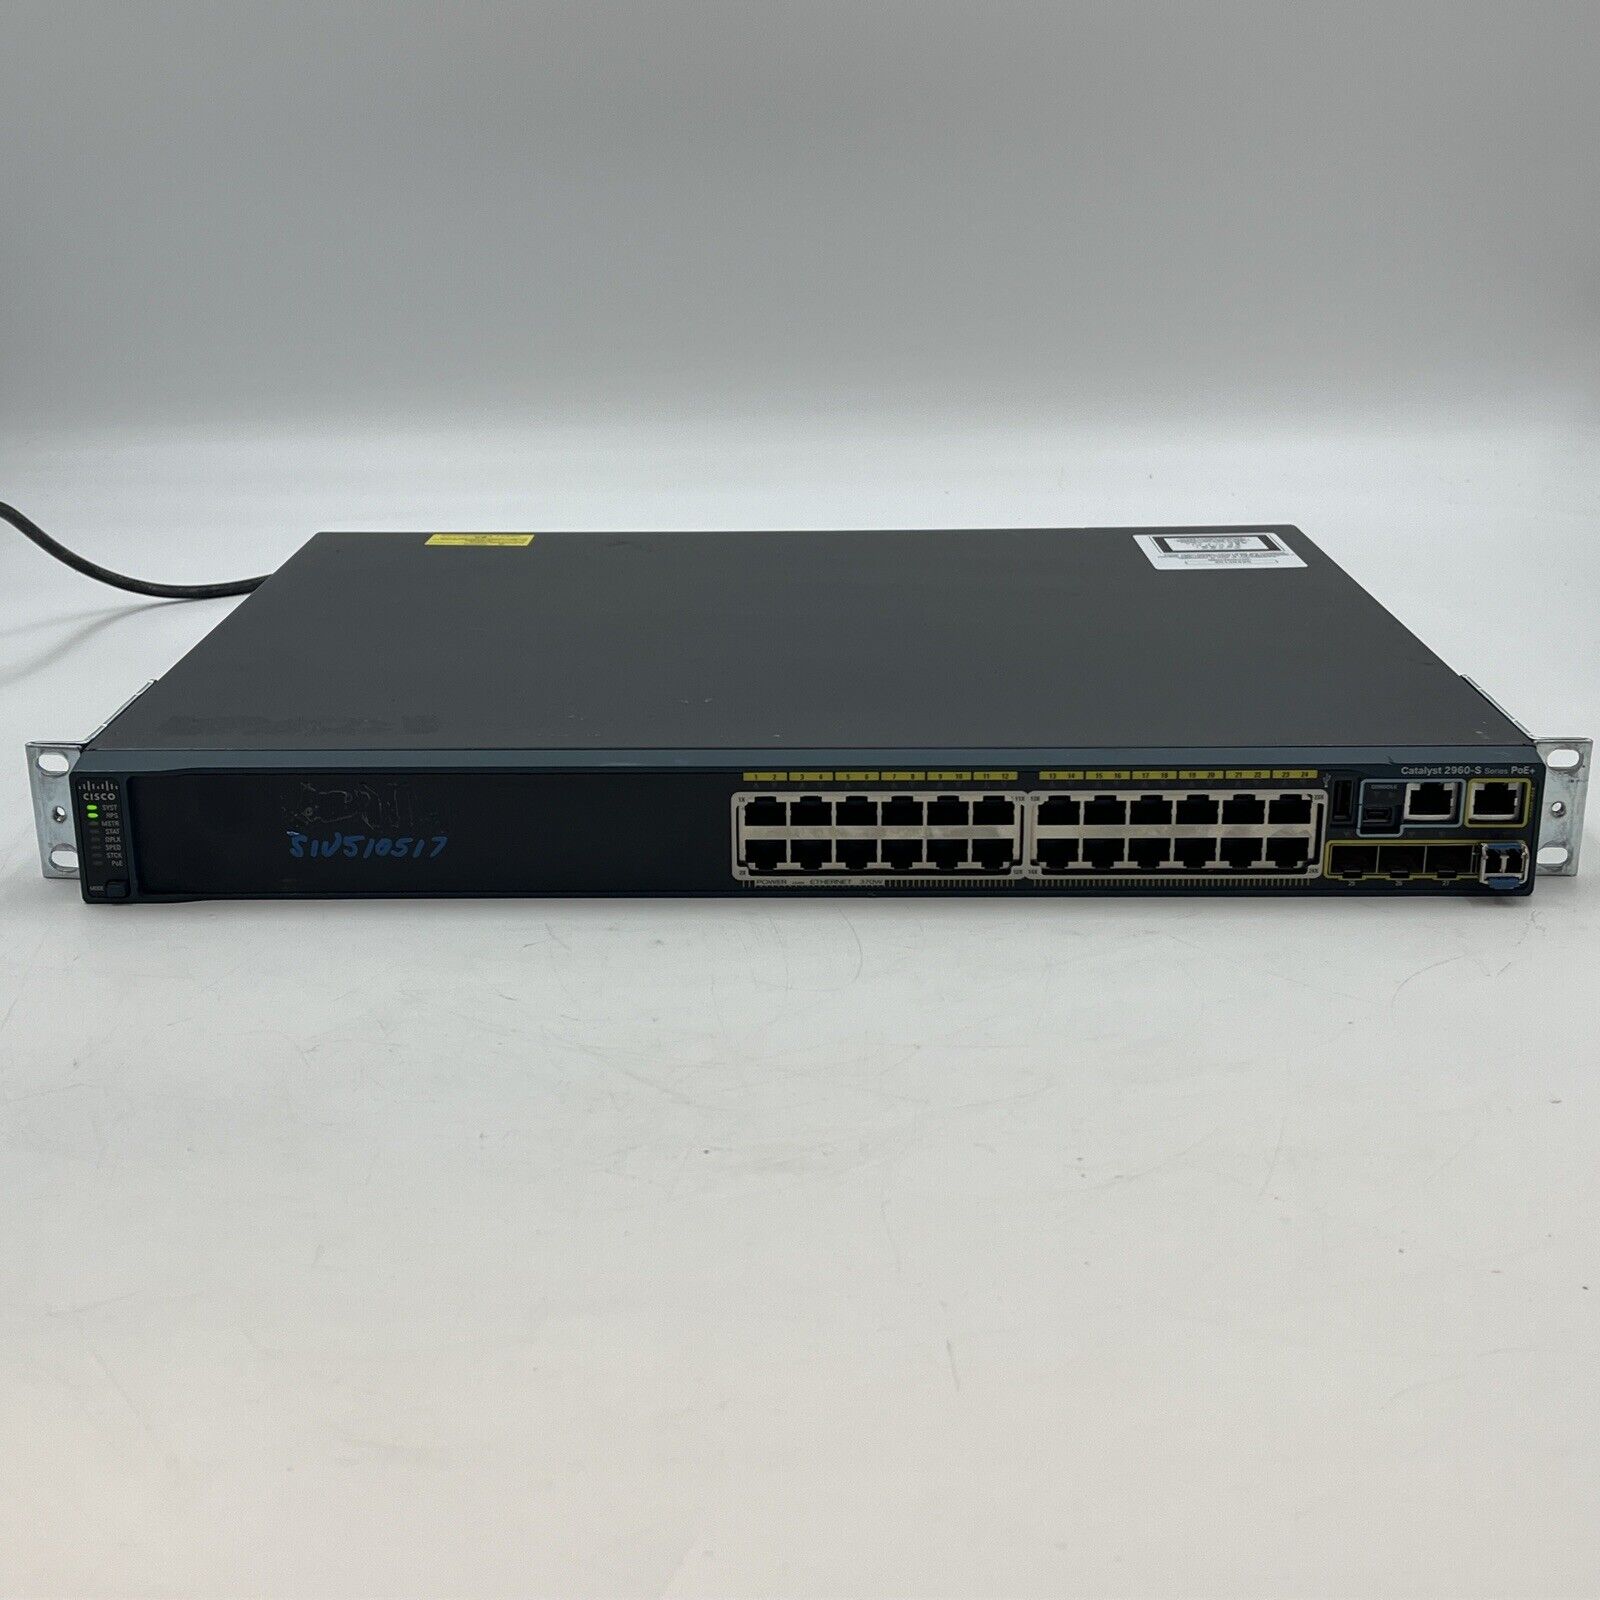 Cisco Catalyst 2960S WS-C2960S-24PD-L 24-Port Gigabit Ethernet Managed PoE+